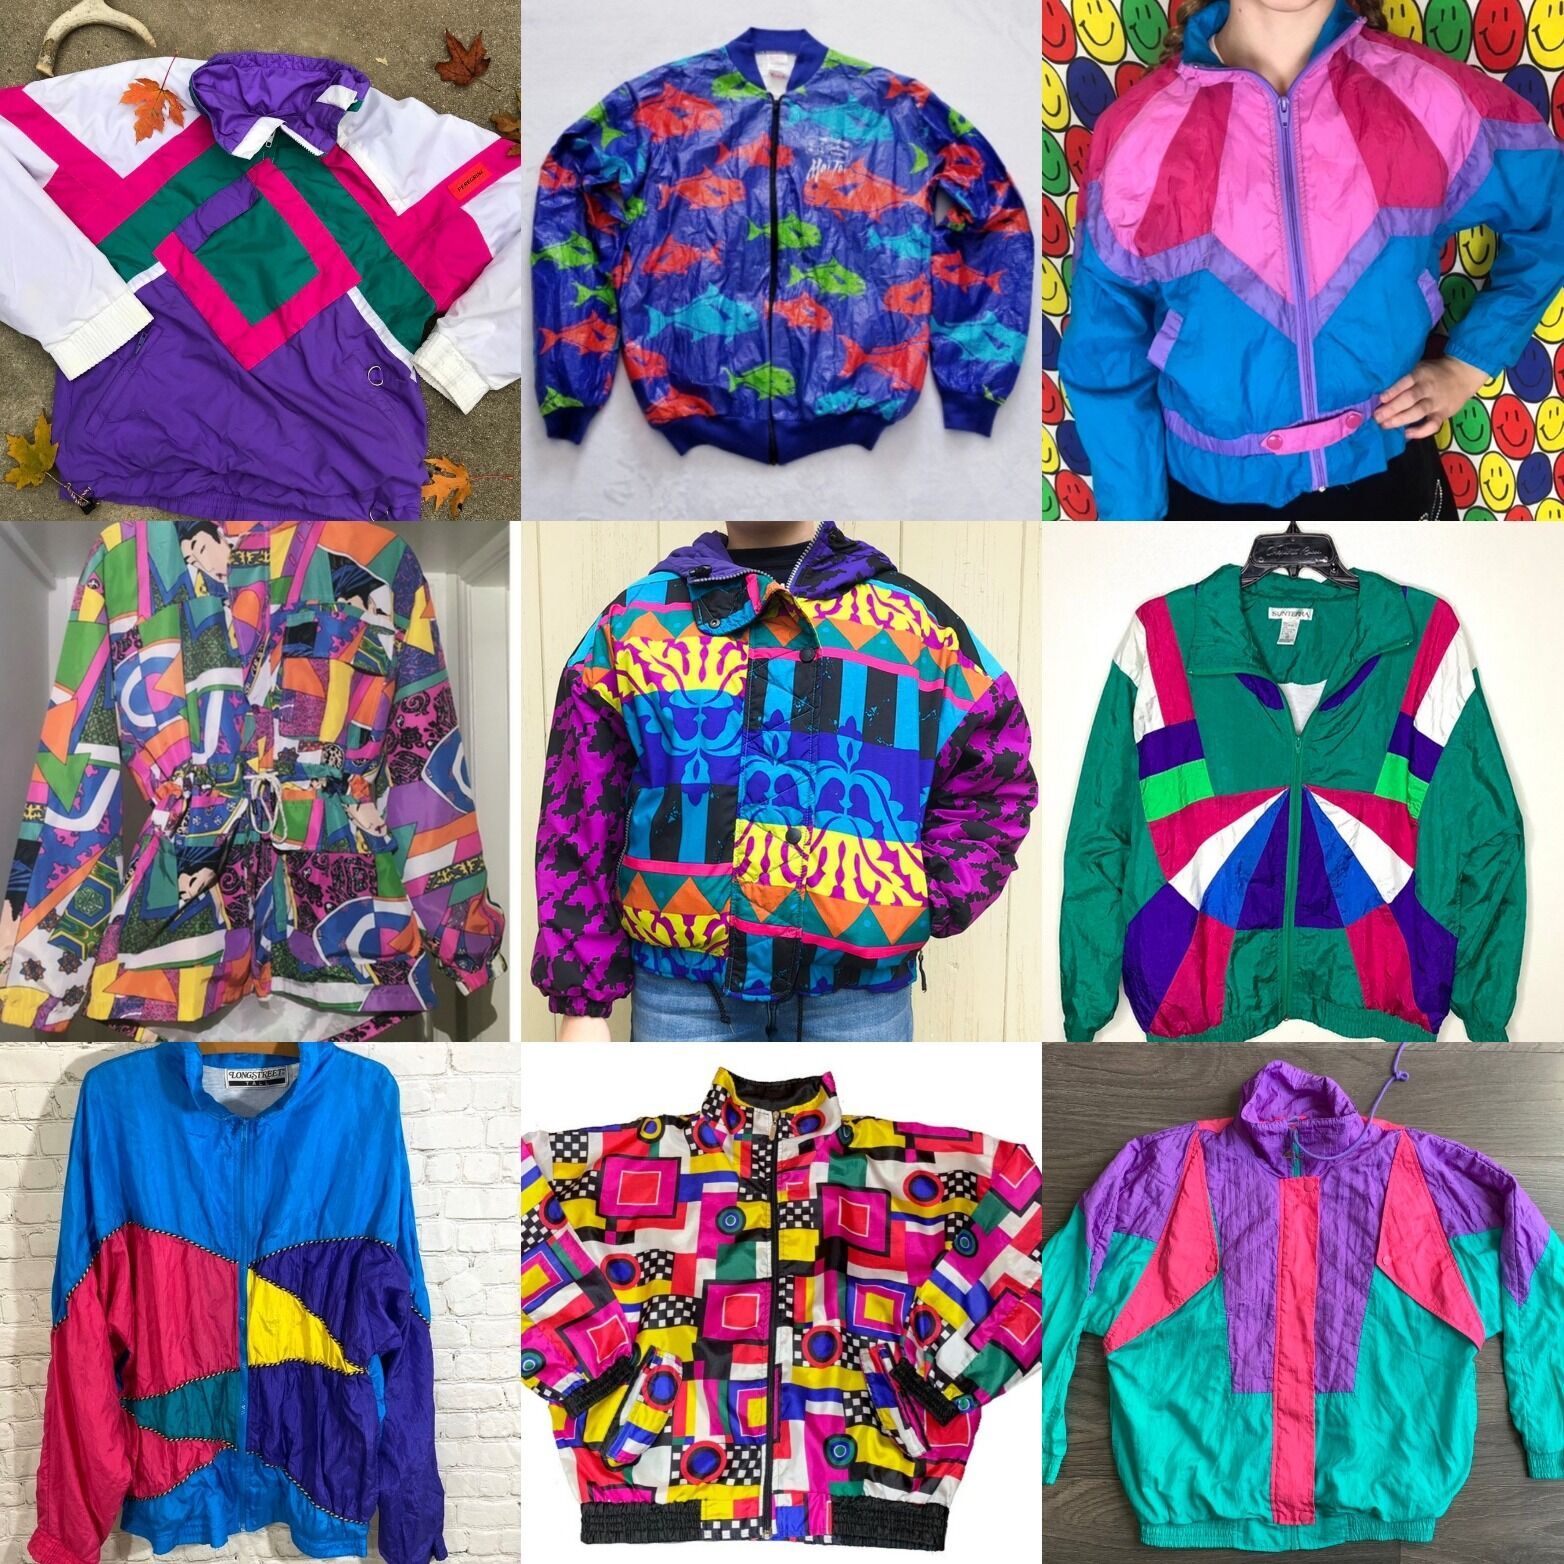 Спортивные костюмы в 90-х были универсальным предметом гардероба